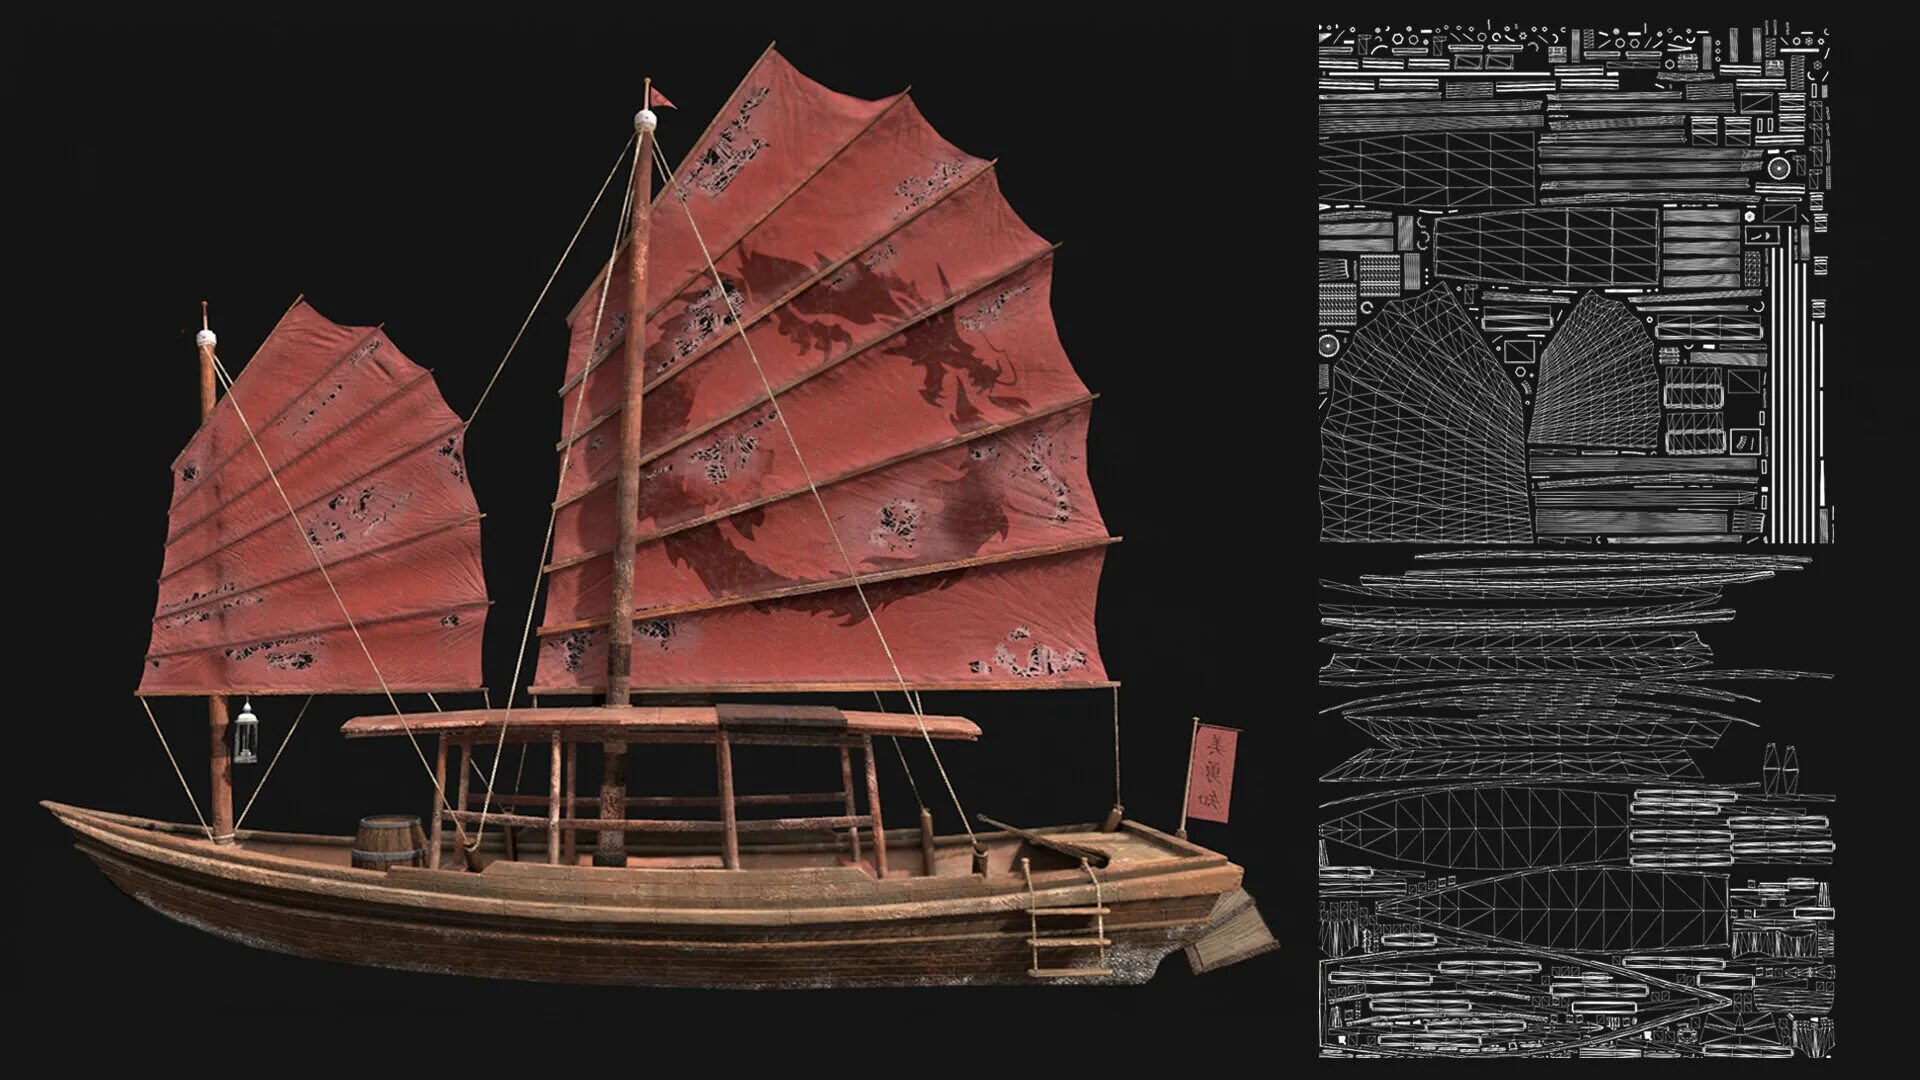 Китайское судно с парусами циновками 6. Джонка Кехаар. Японская Джонка. Китайская Океанская Джонка Морское судно 18 век. Китайская Джонка модель.